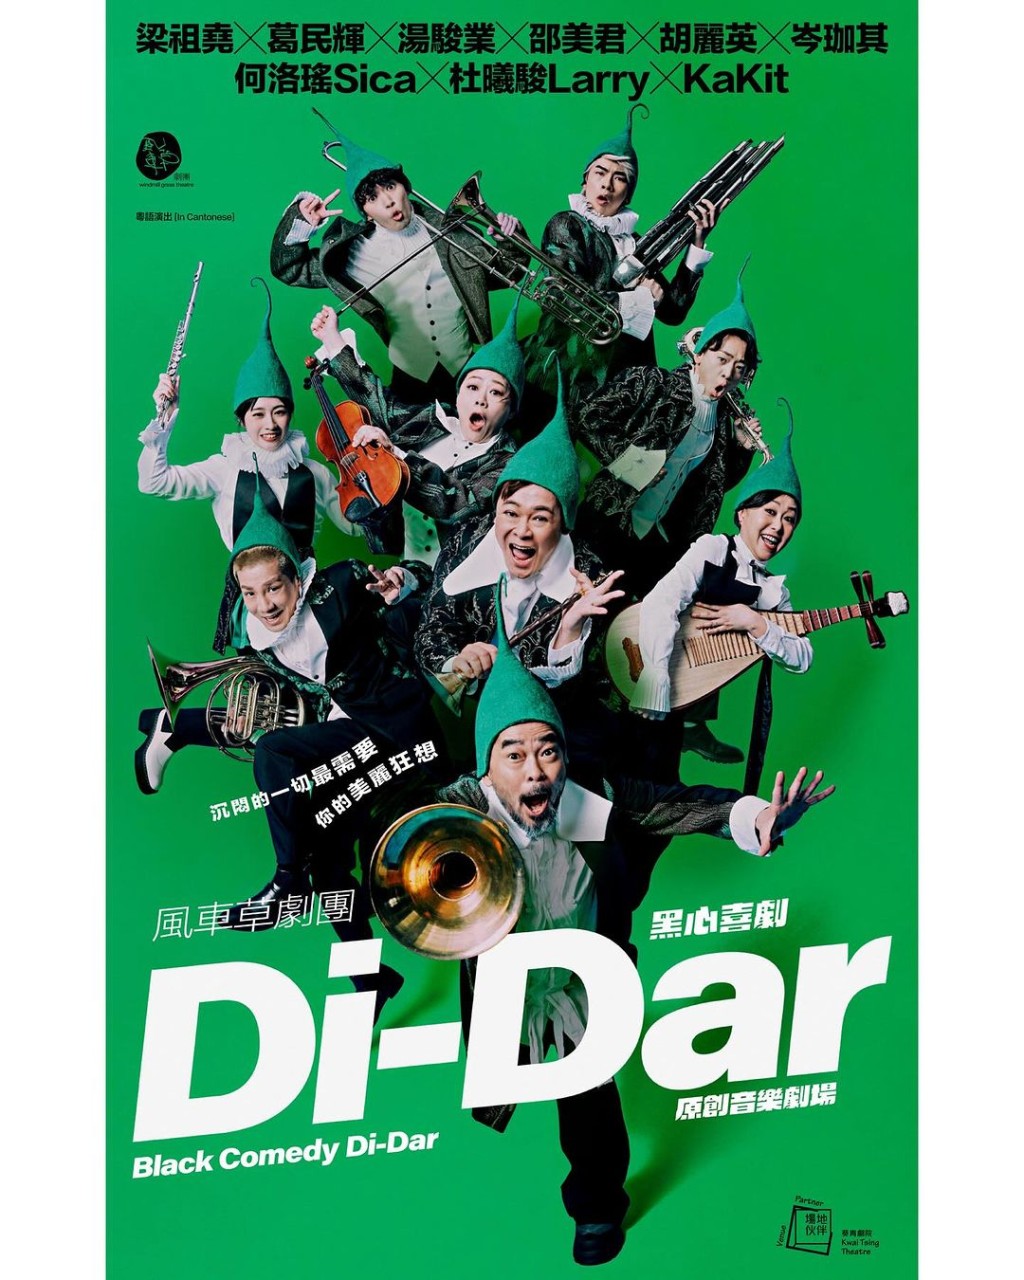 《Di-Dar音乐剧场》将于8月演出。